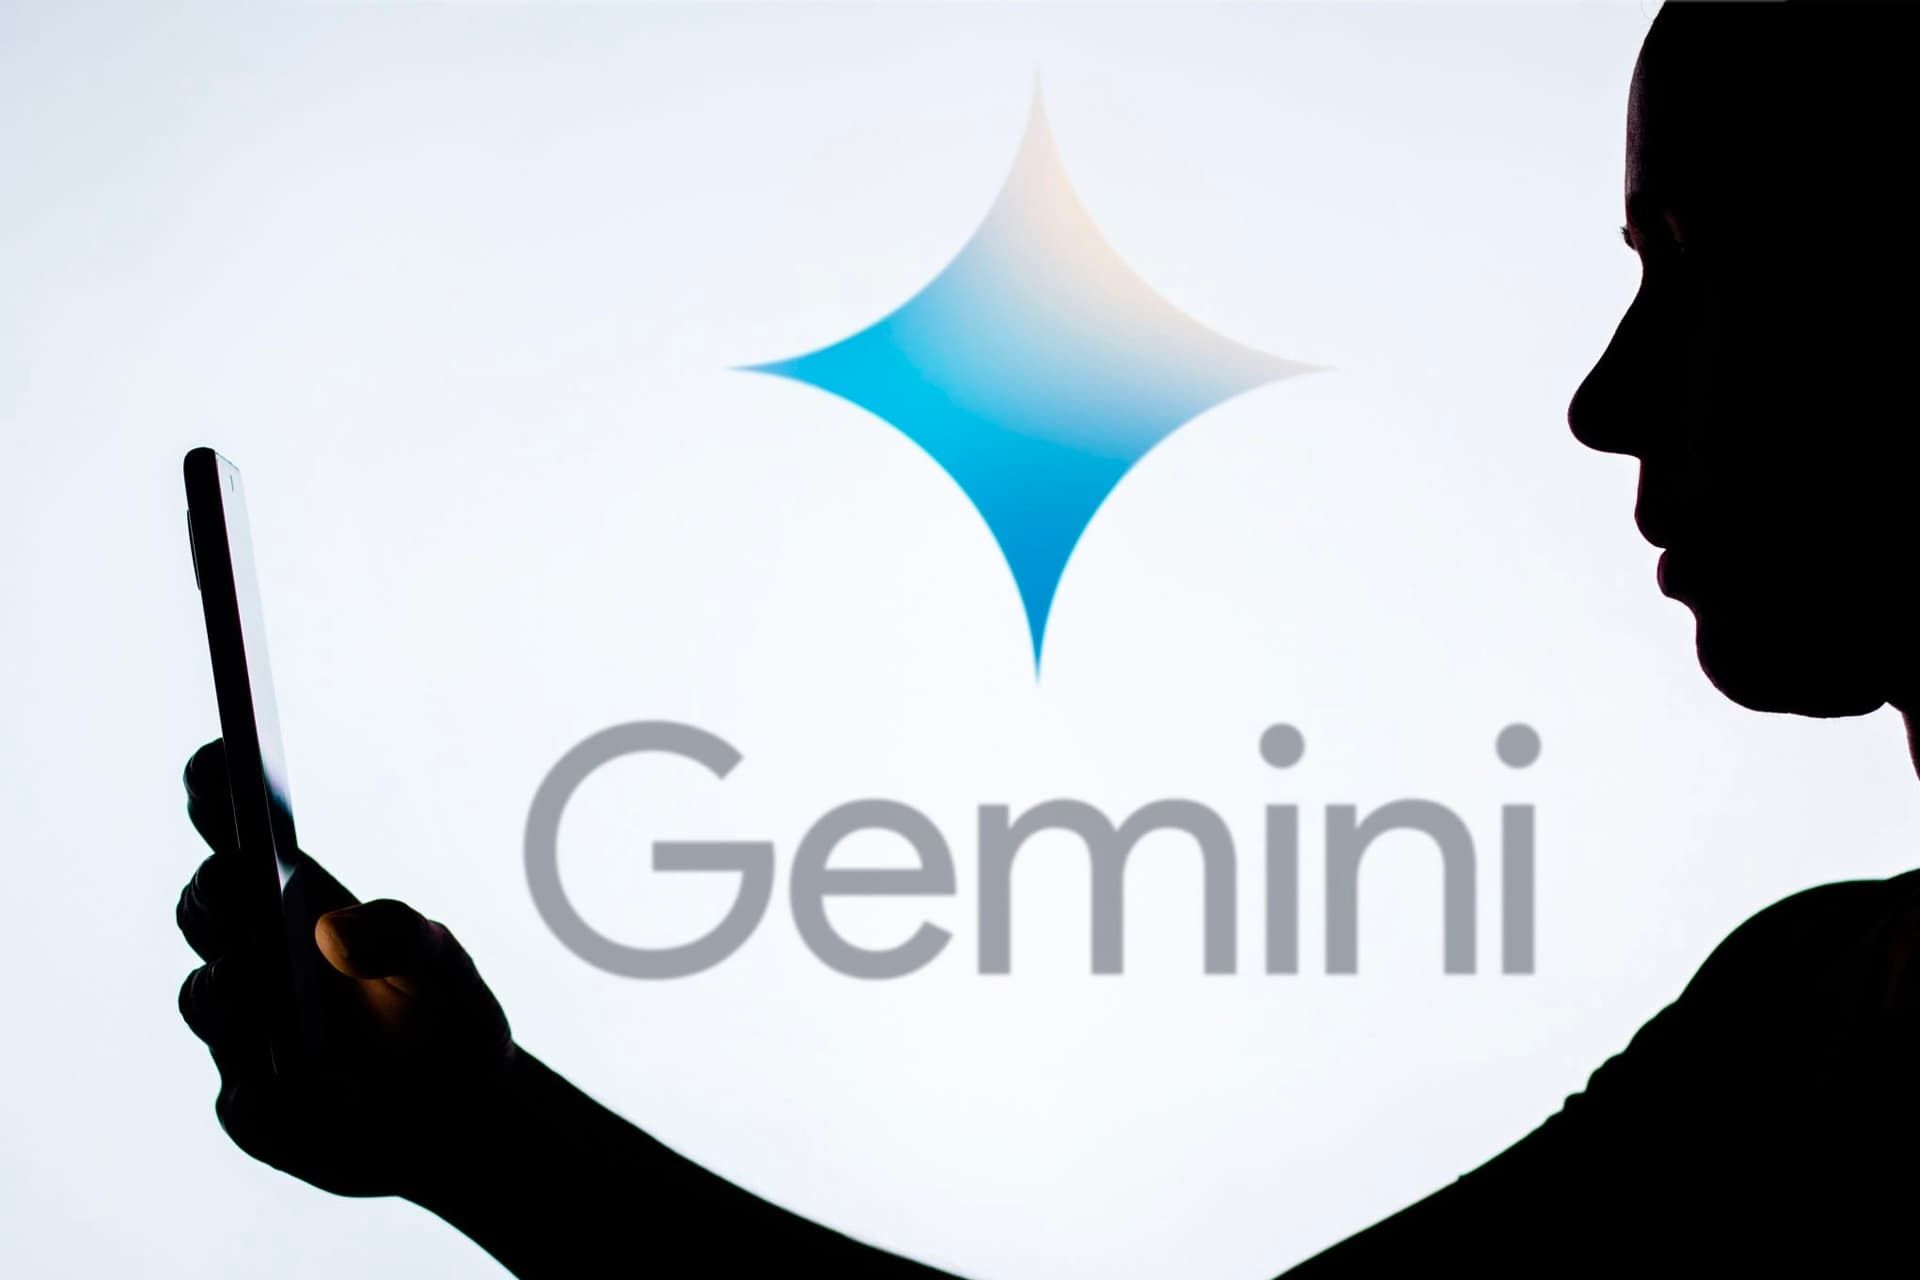 هوش مصنوعی گوگل جمنای / Google Gemini در پشت کاربری با موبایل